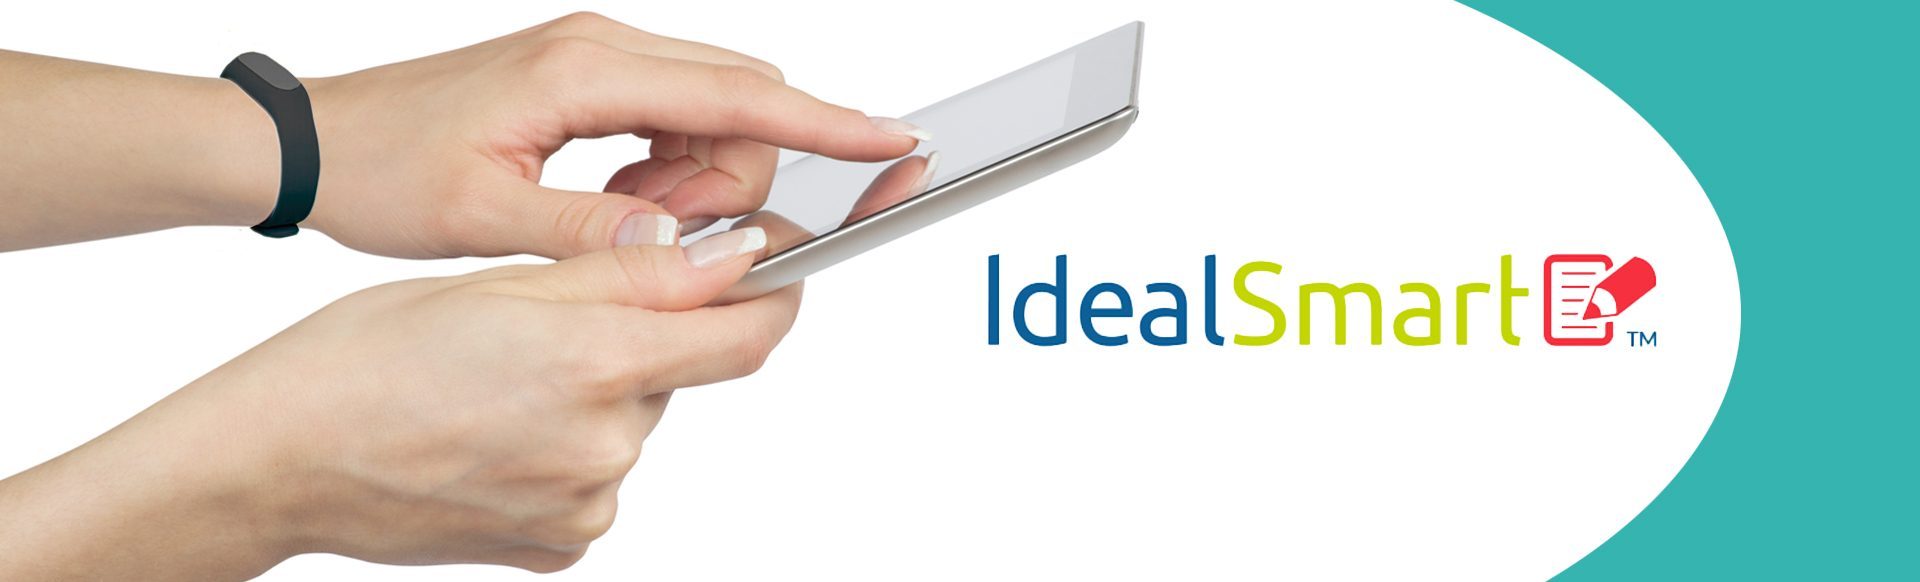 IdealSmart App - Weight Loss Program | Innovative Aesthetics Spa ...